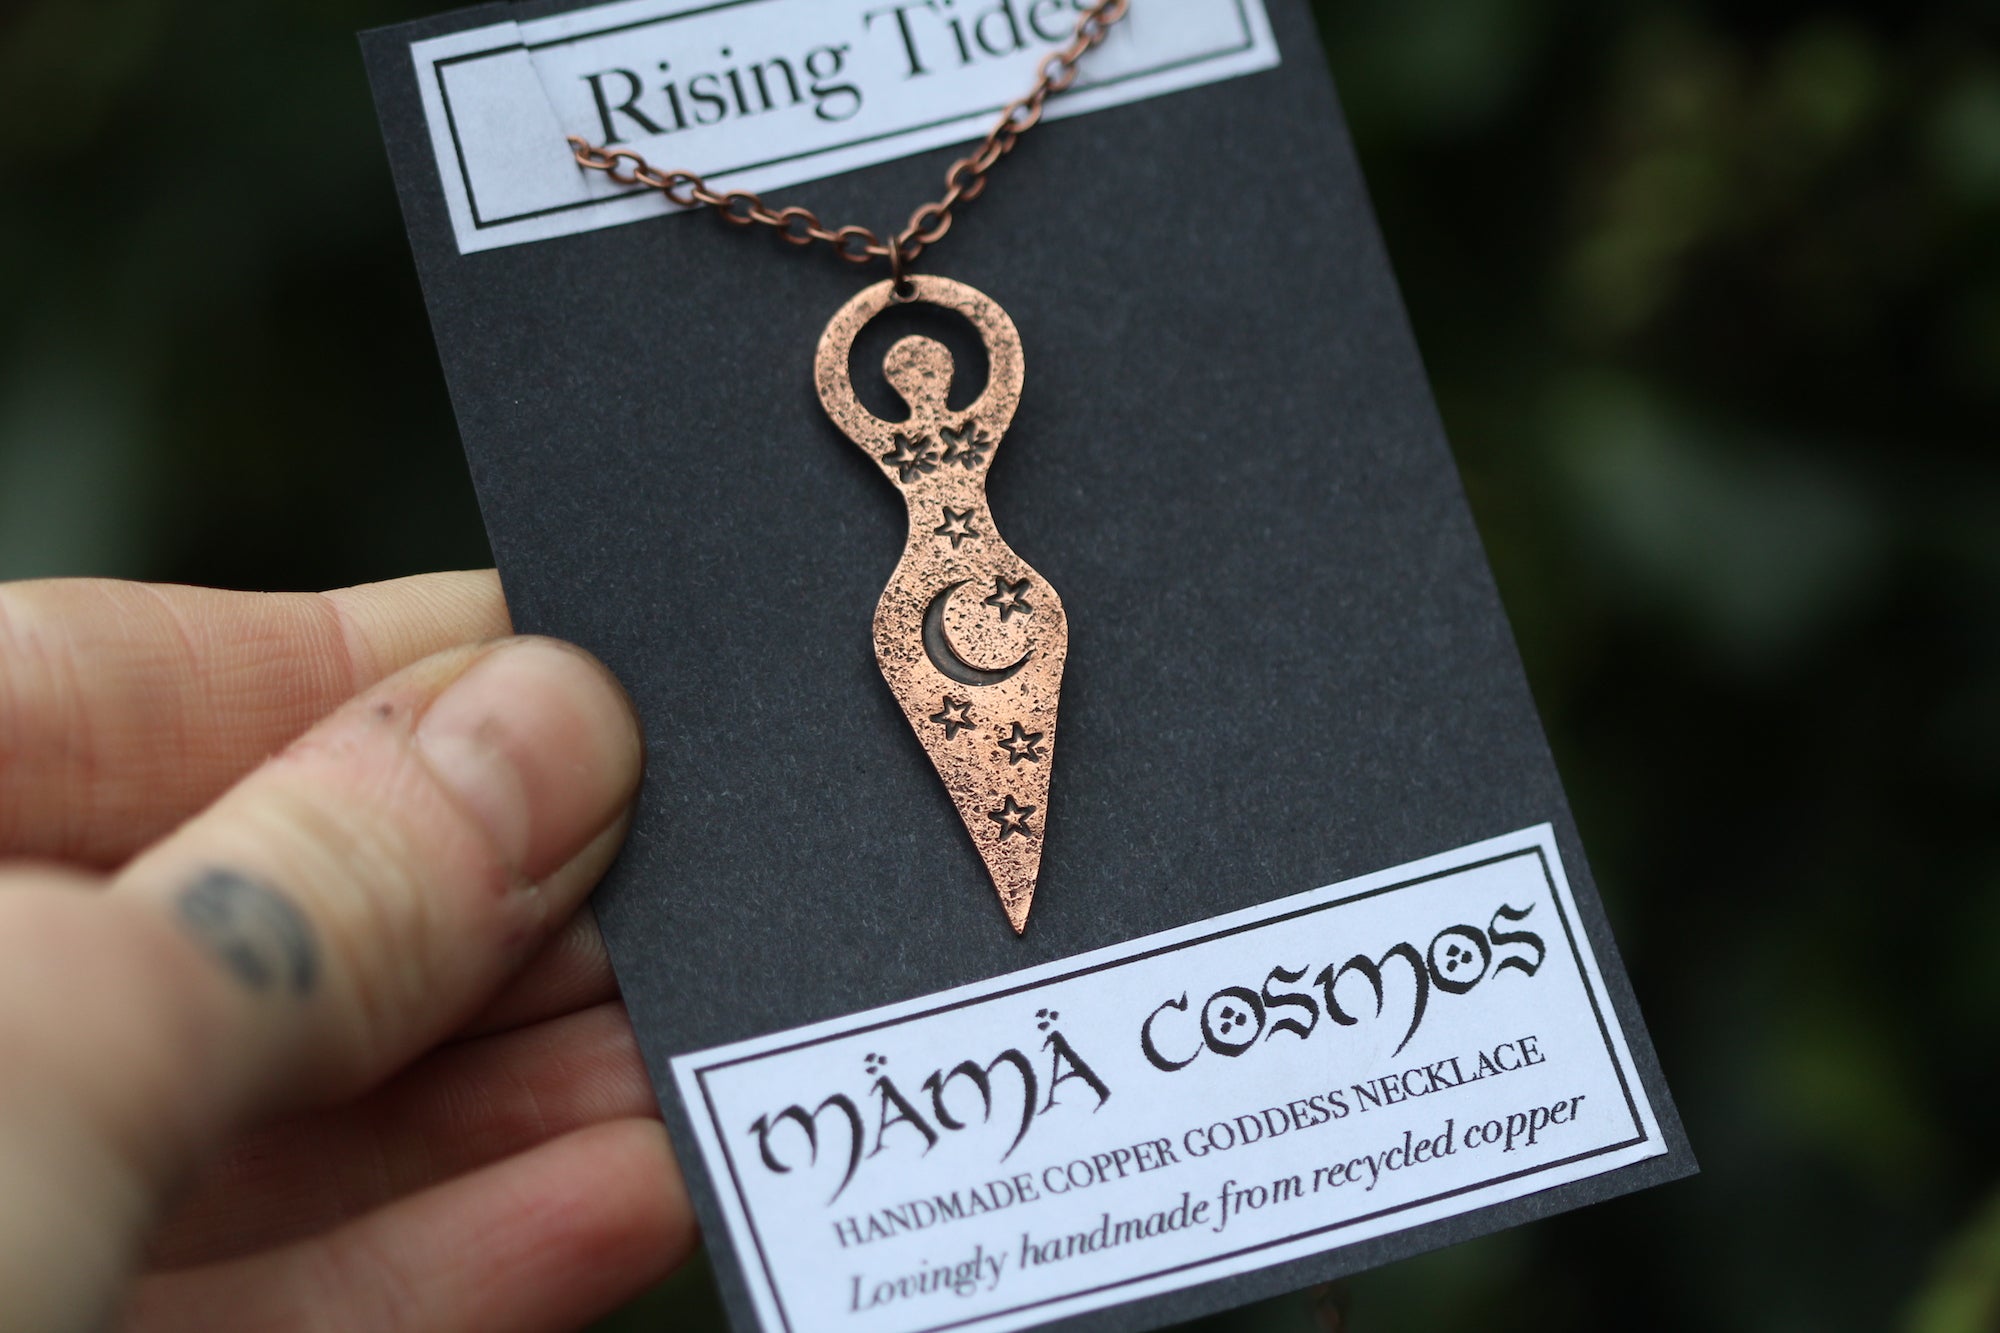 MAMA COSMOS Handmade Copper Goddess Necklace